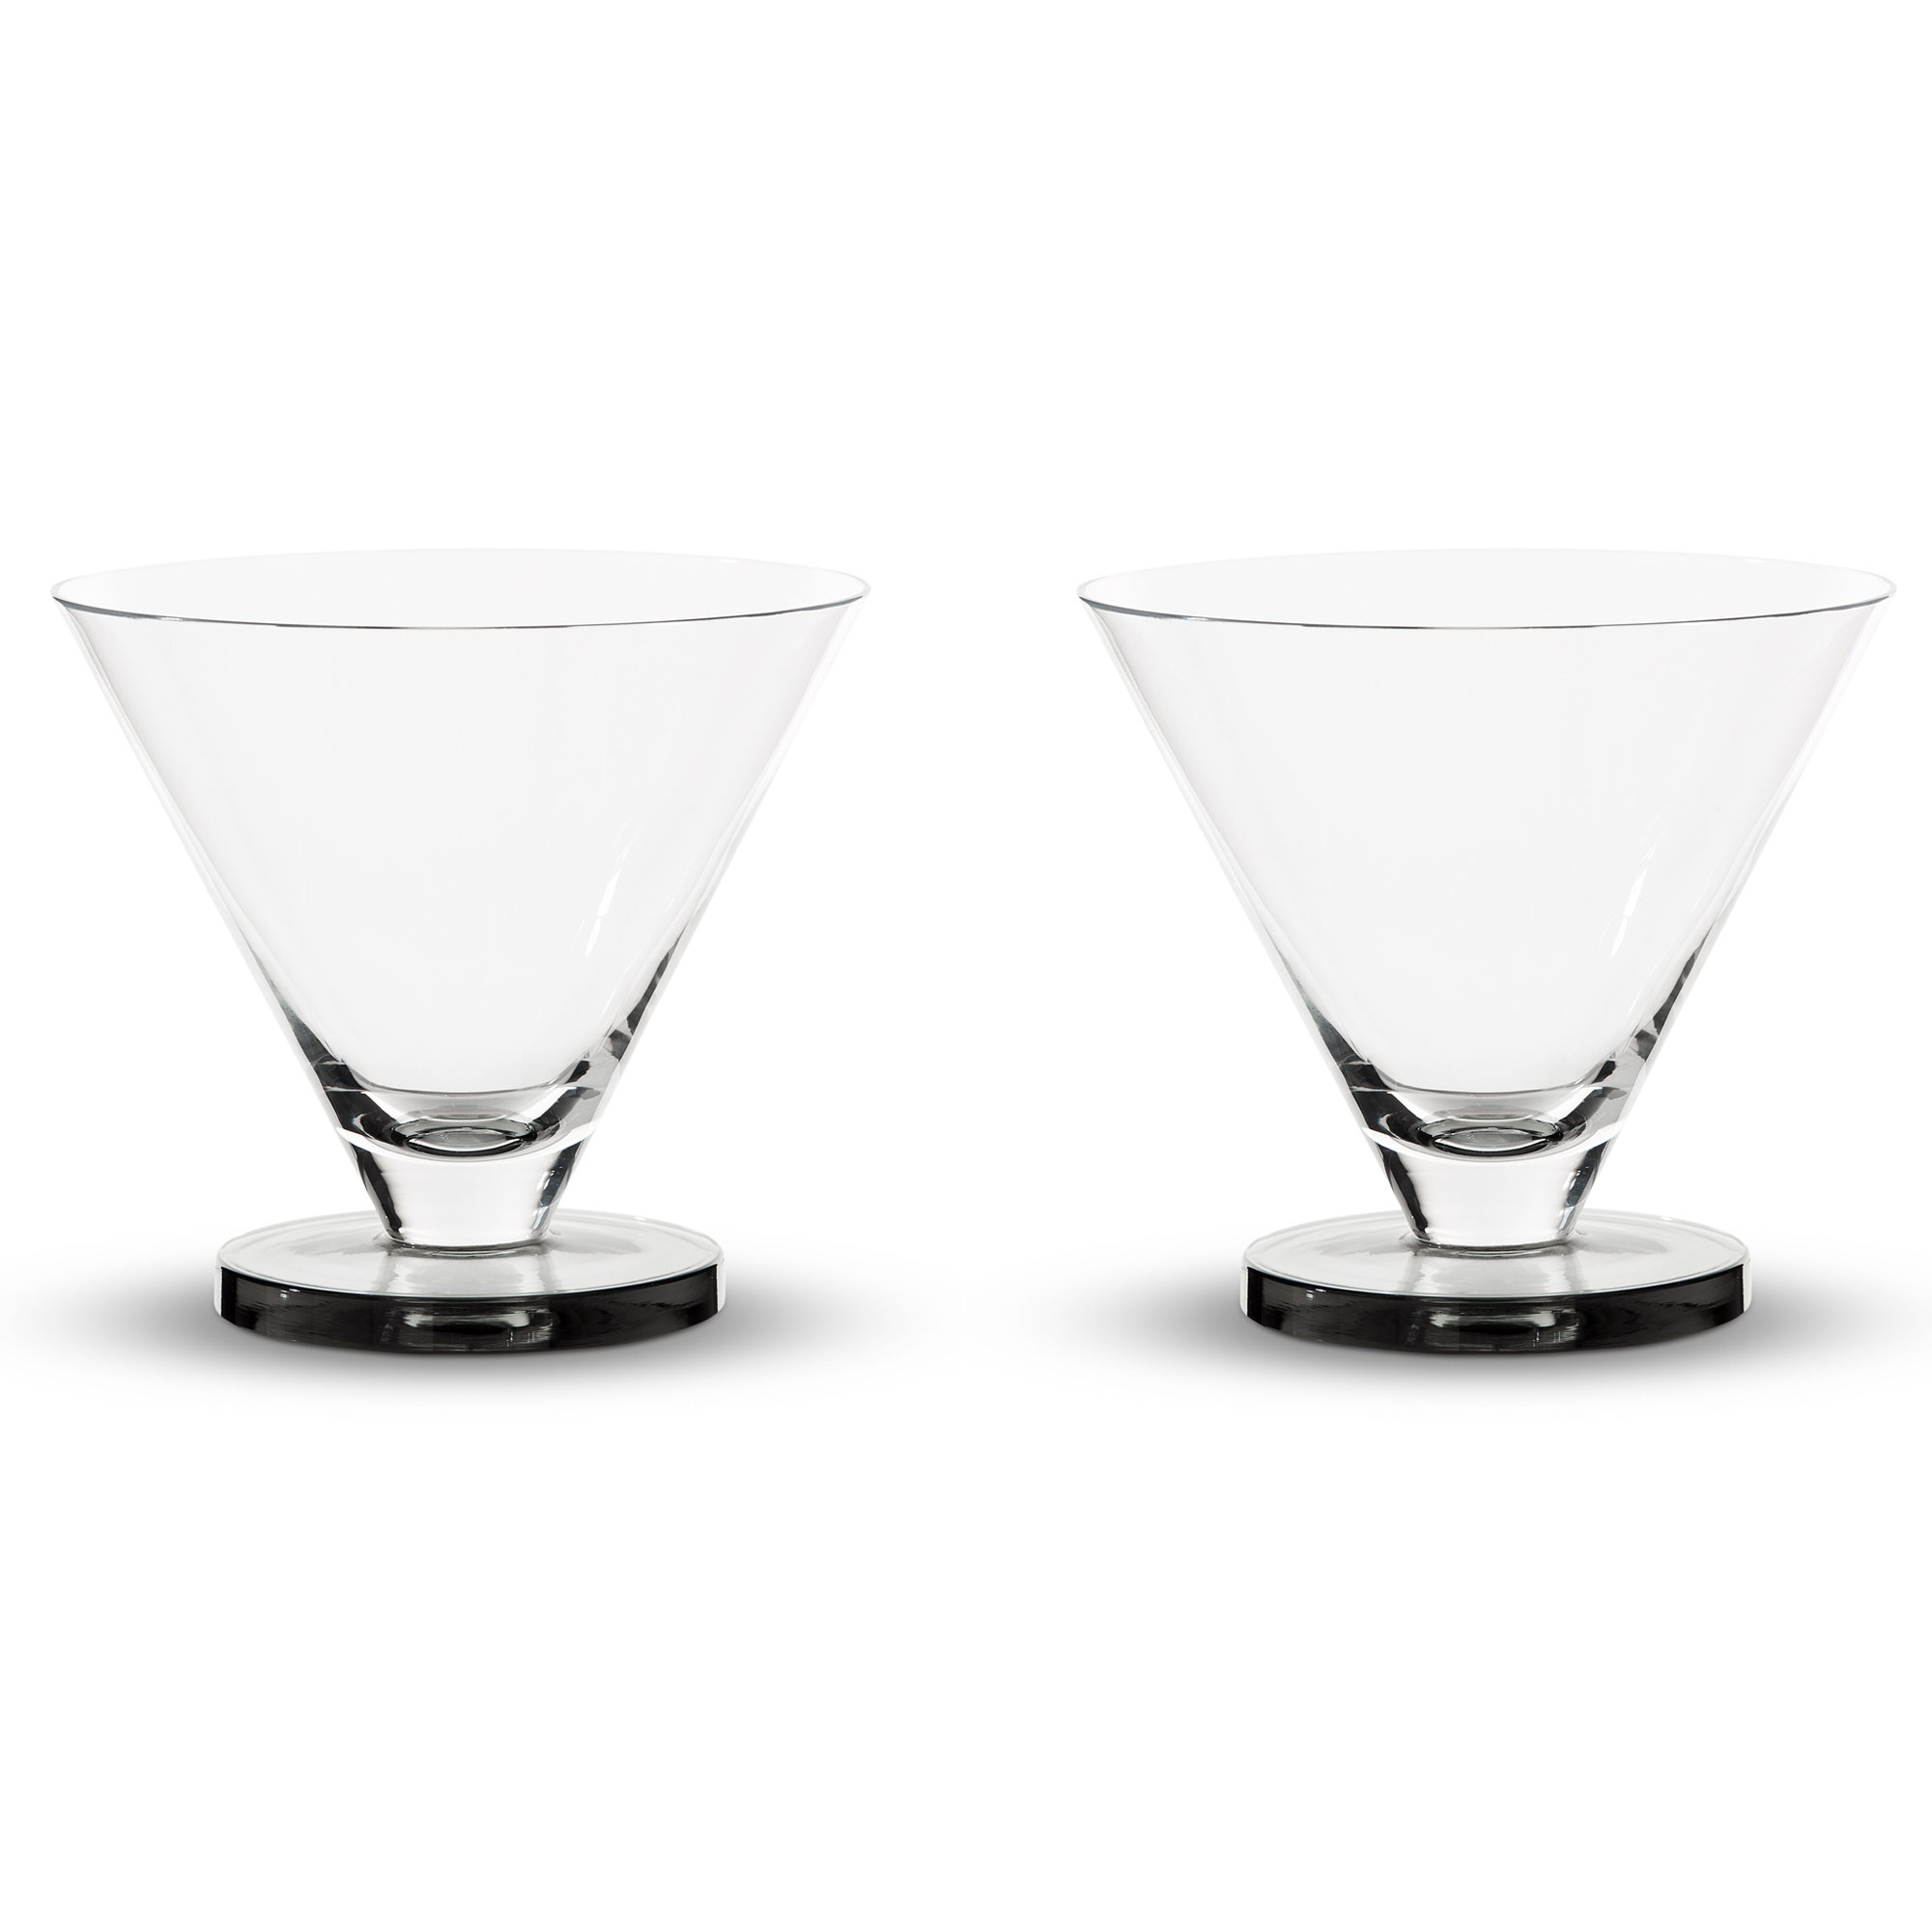 Puck set of 2 martini glasses in white - Tom Dixon